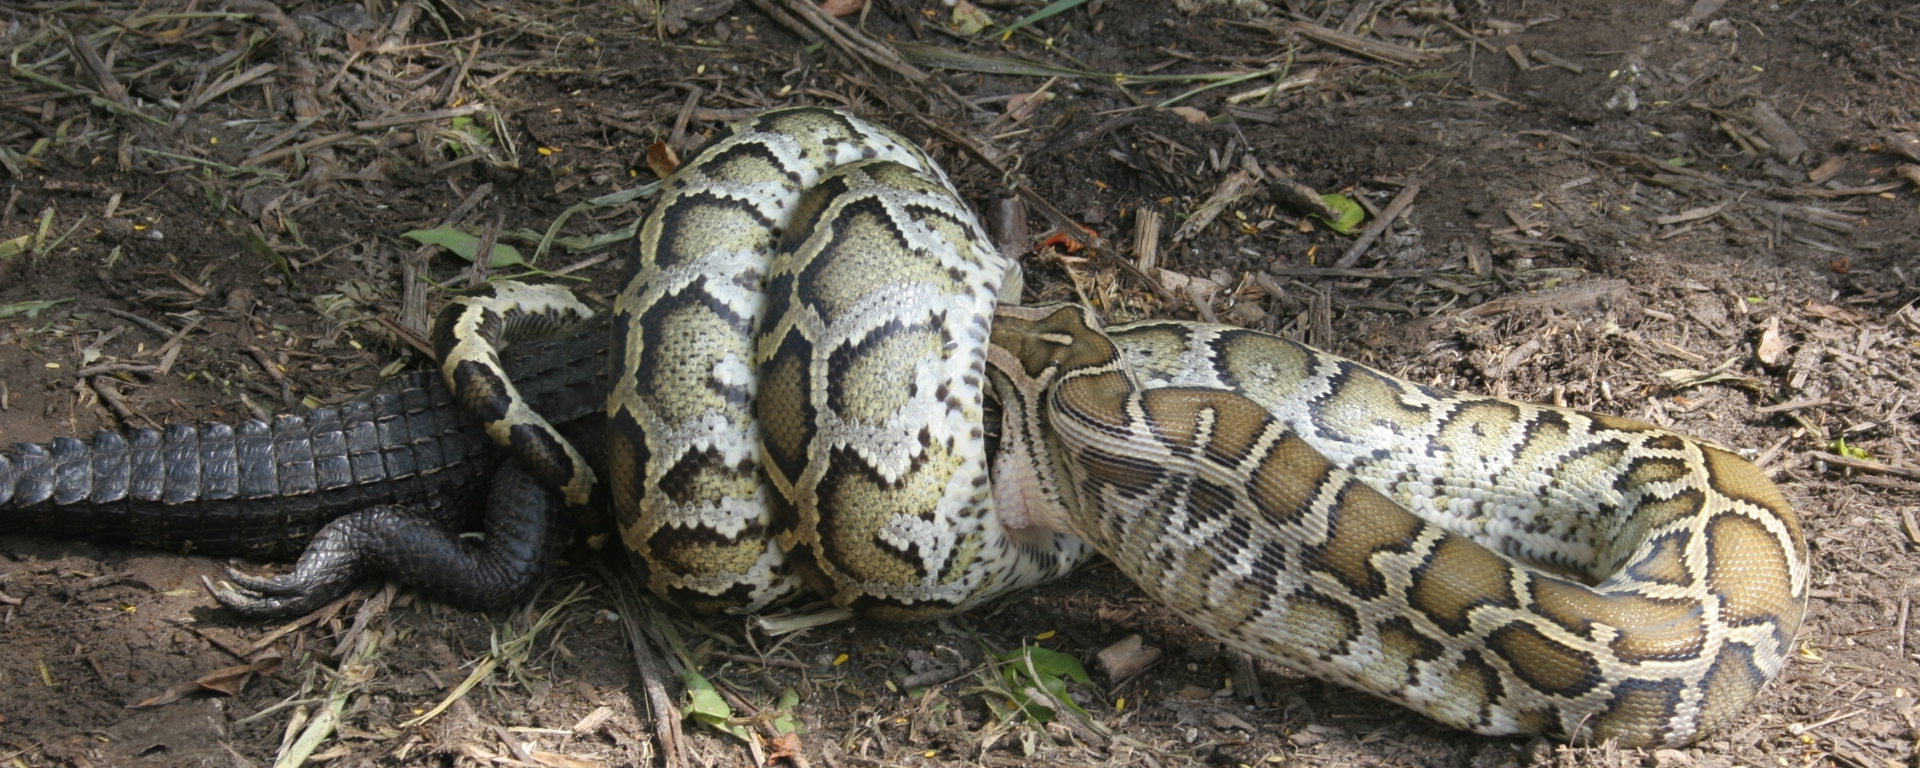 Burmese Python Eating Alligator